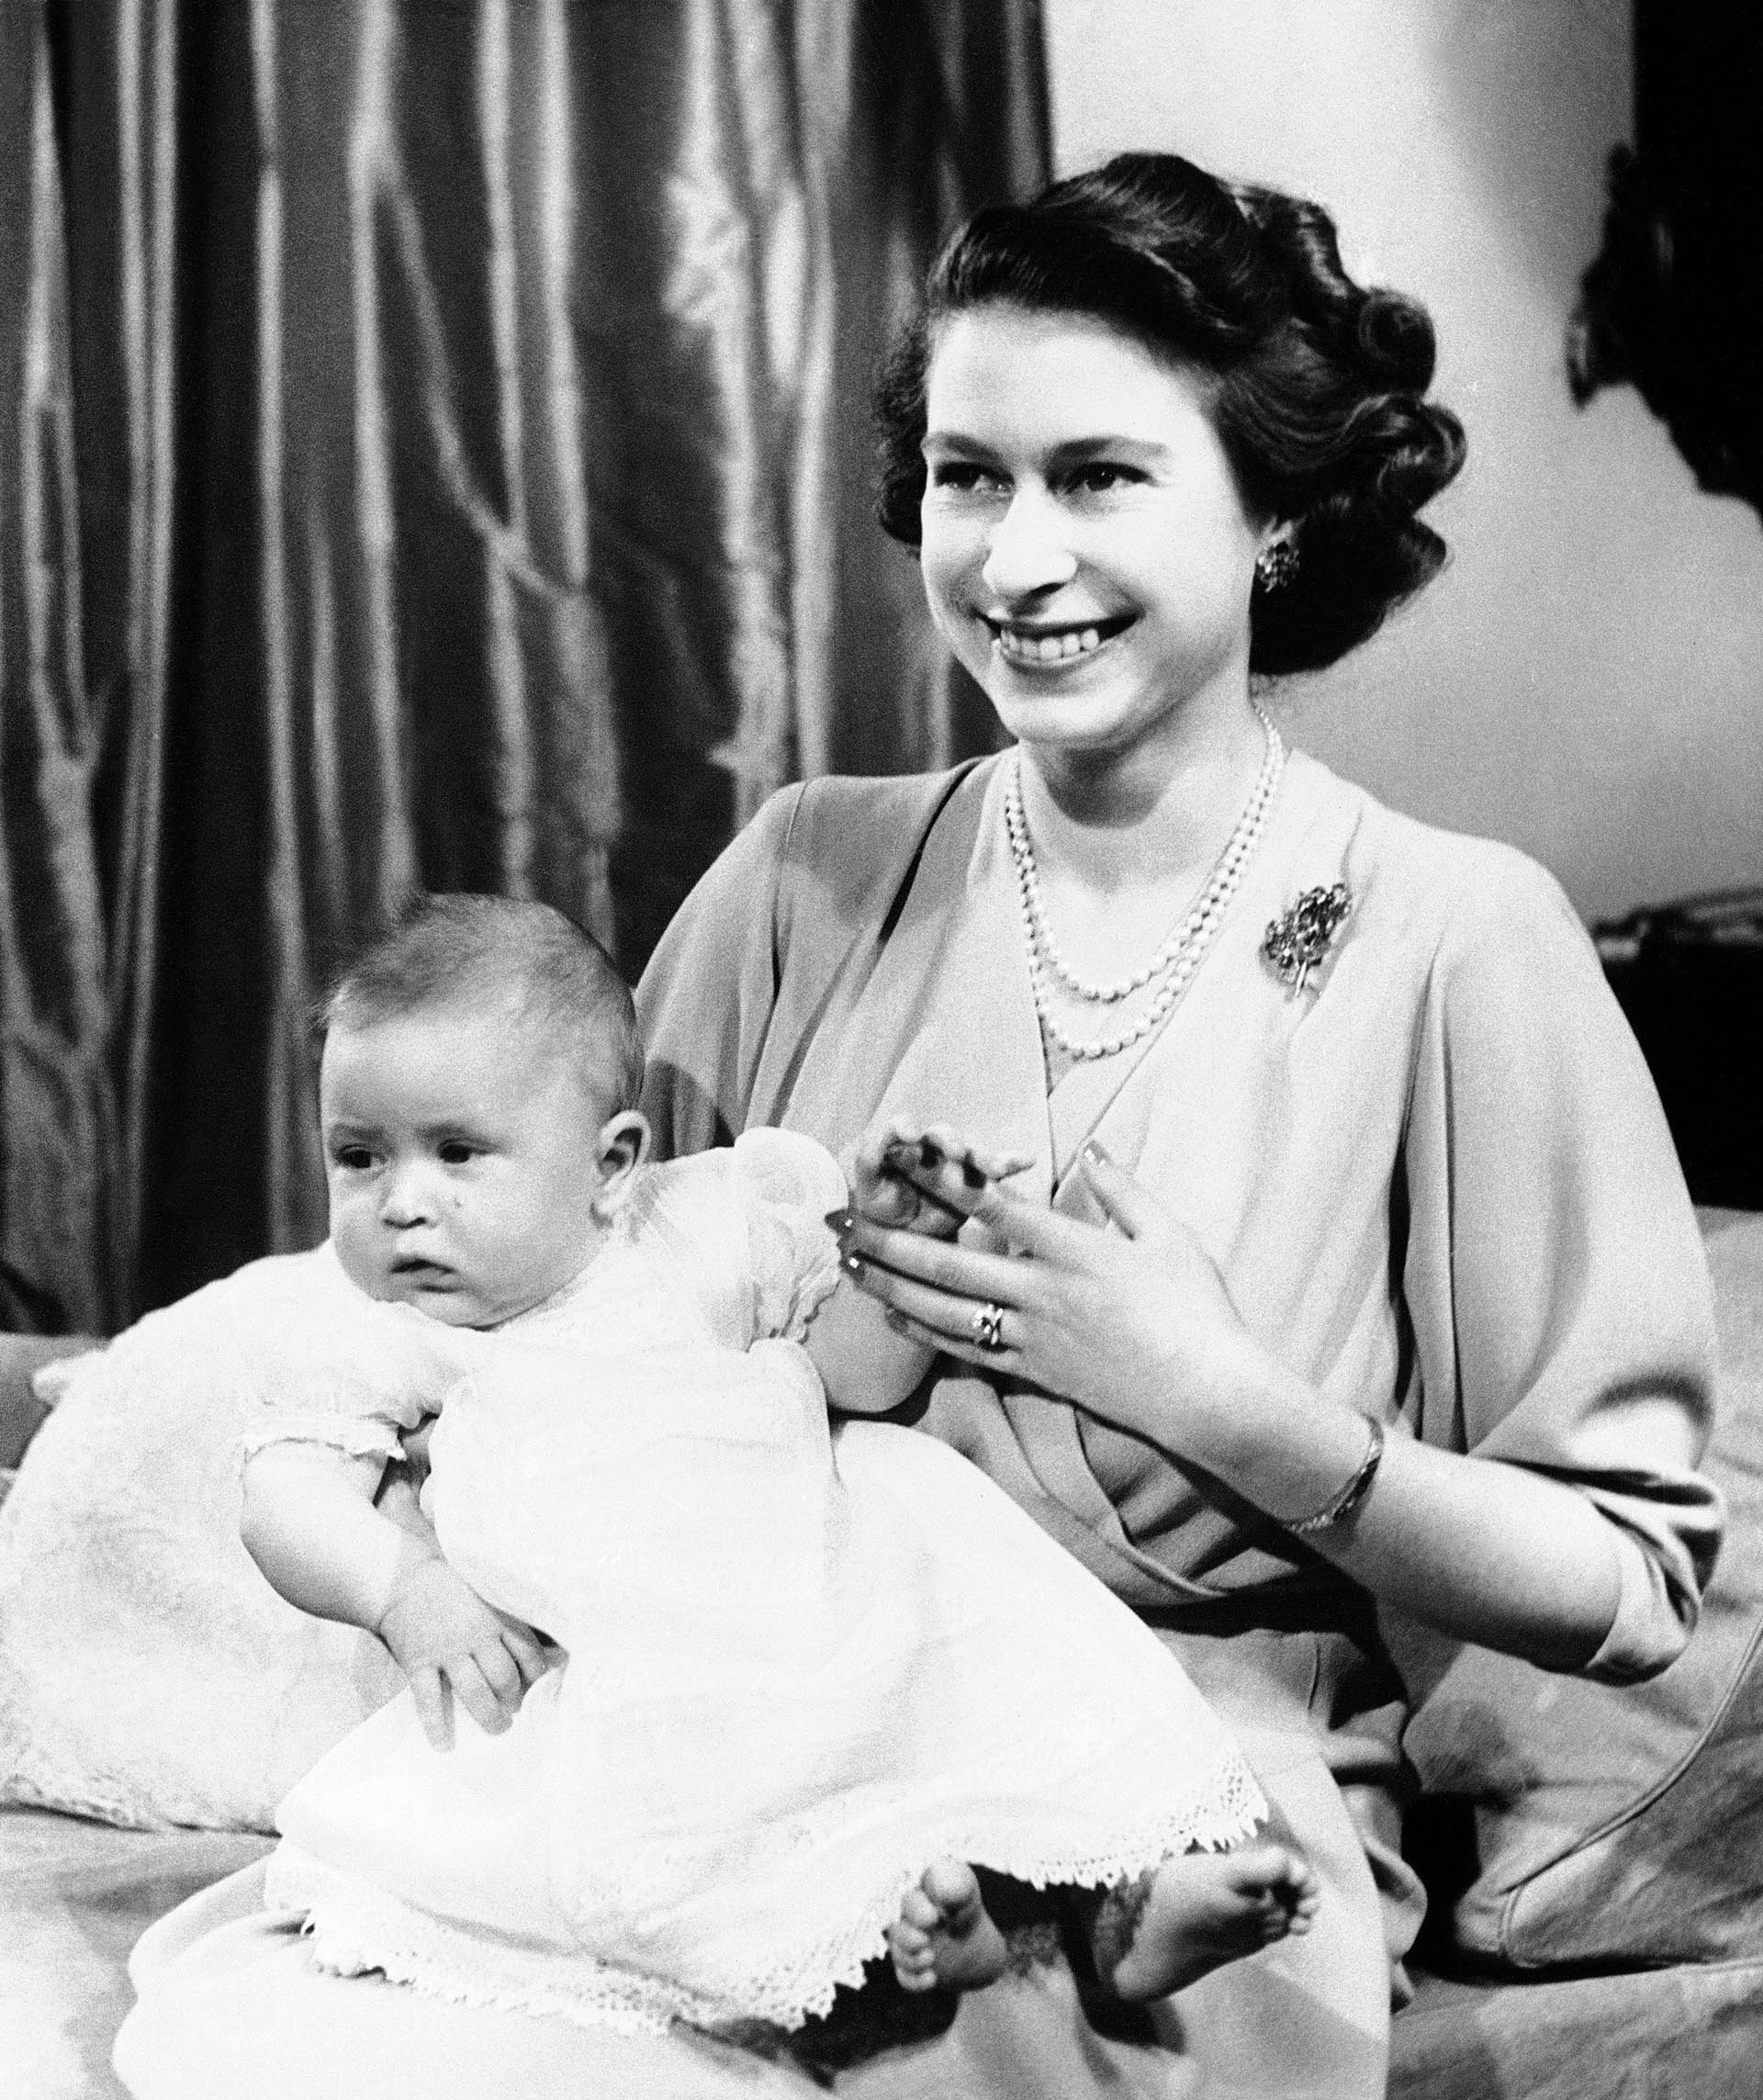 ARCHIVO - La princesa Isabel de Gran Bretaña posa para una foto con su hijo, el príncipe Carlos, en el Palacio de Buckingham, Londres, 10 de abril de 1949. (Foto AP, archivo)
